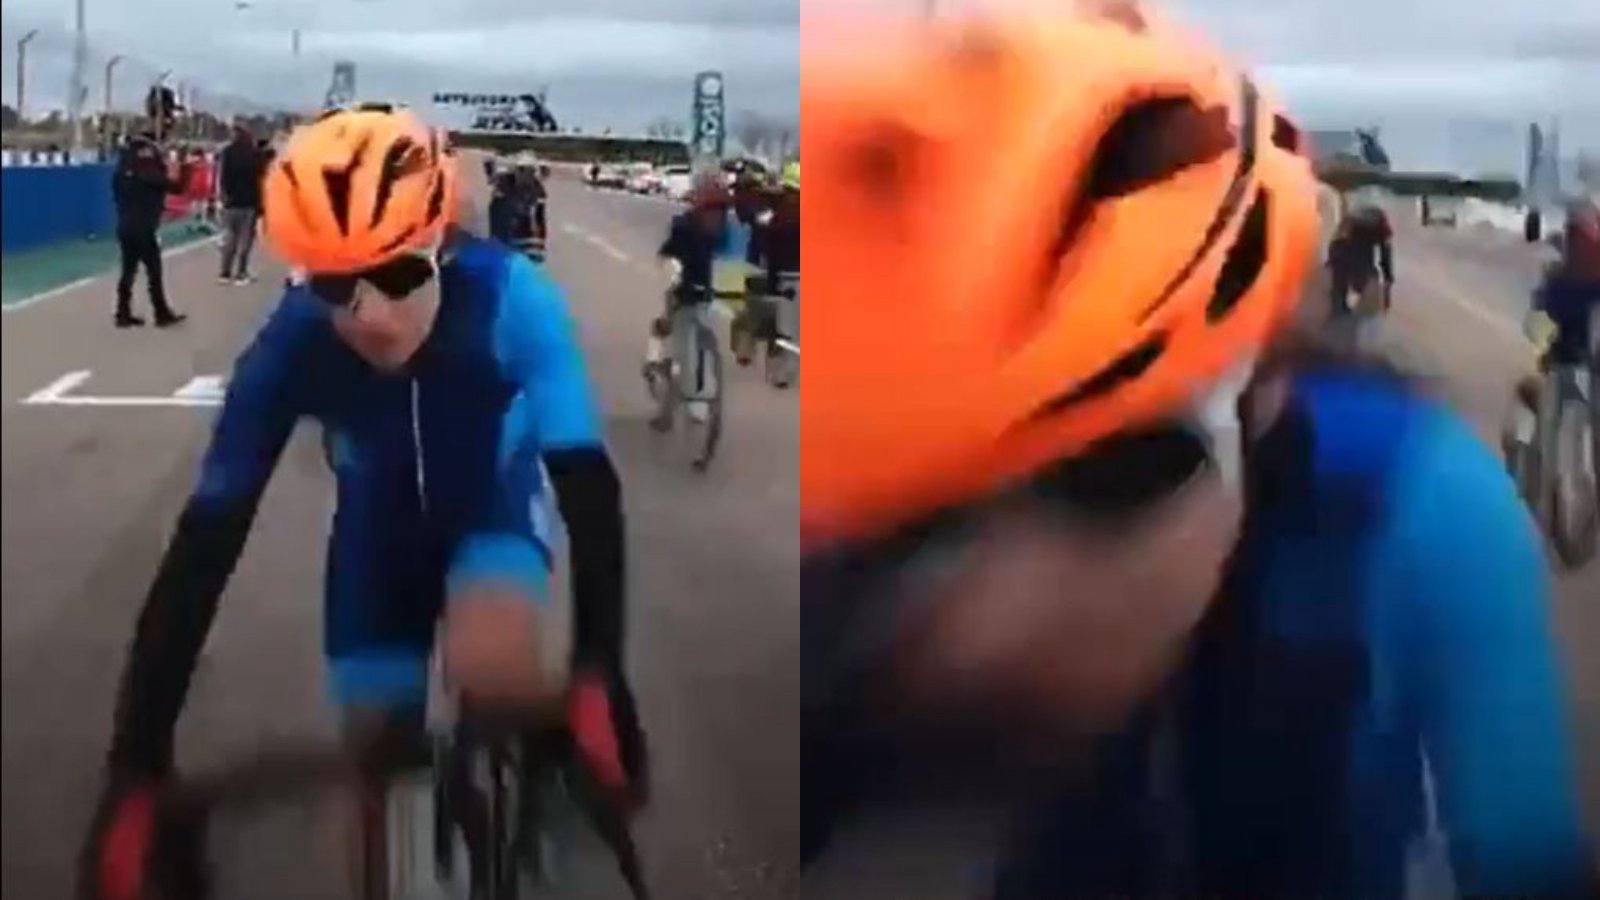 Captura del momento en el que la periodista Mariela Arce es atropellada por una ciclista durante una competición realizada en Mendoza, Argentina.